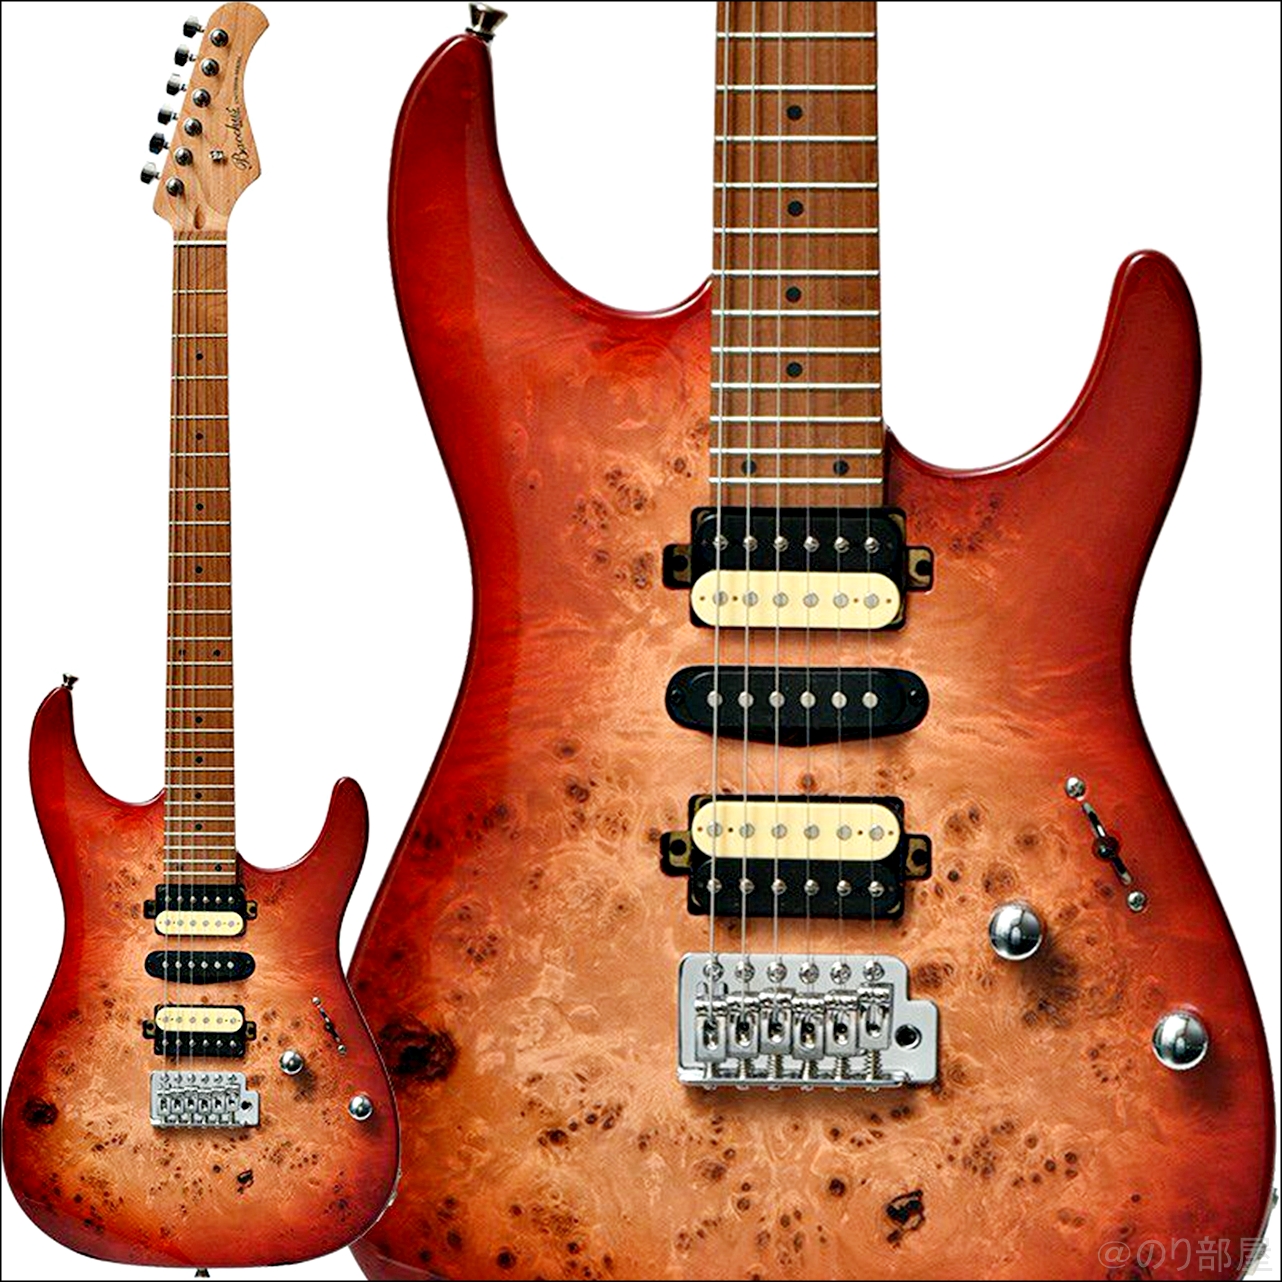 お金が無い人にオススメのギターは「BACCHUS(バッカス) BST-2-RSM/R」！【安くて初心者にもおすすめ】お金が無い人向けにオススメのギター&用品！初心者にもオススメの安くお金がかからないアイテムを紹介！